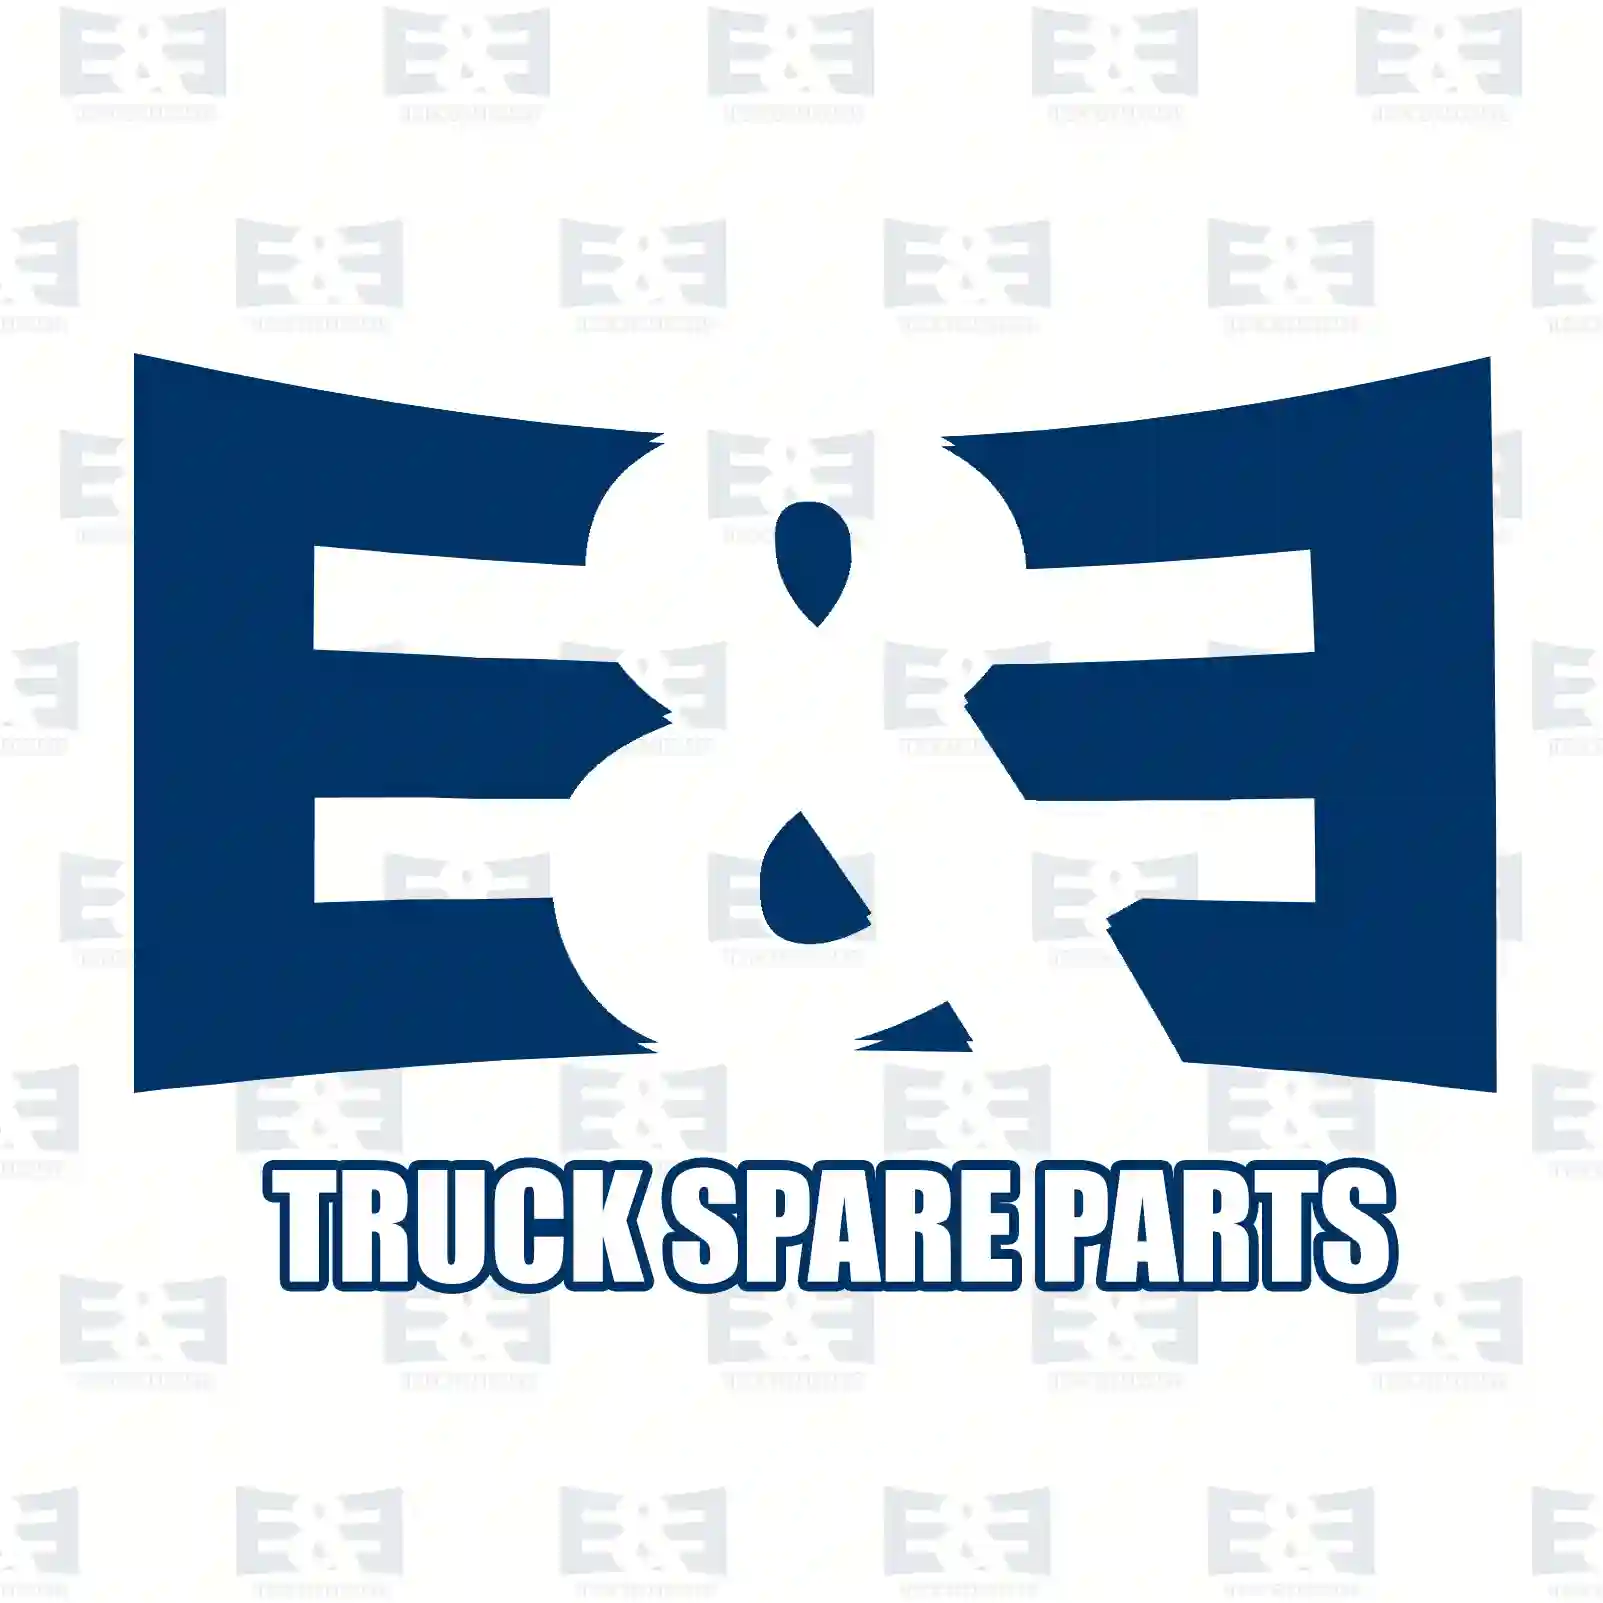 Wiper linkage, with motor, 2E2293165, 81264116118S1, 81264116141S2 ||  2E2293165 E&E Truck Spare Parts | Truck Spare Parts, Auotomotive Spare Parts Wiper linkage, with motor, 2E2293165, 81264116118S1, 81264116141S2 ||  2E2293165 E&E Truck Spare Parts | Truck Spare Parts, Auotomotive Spare Parts